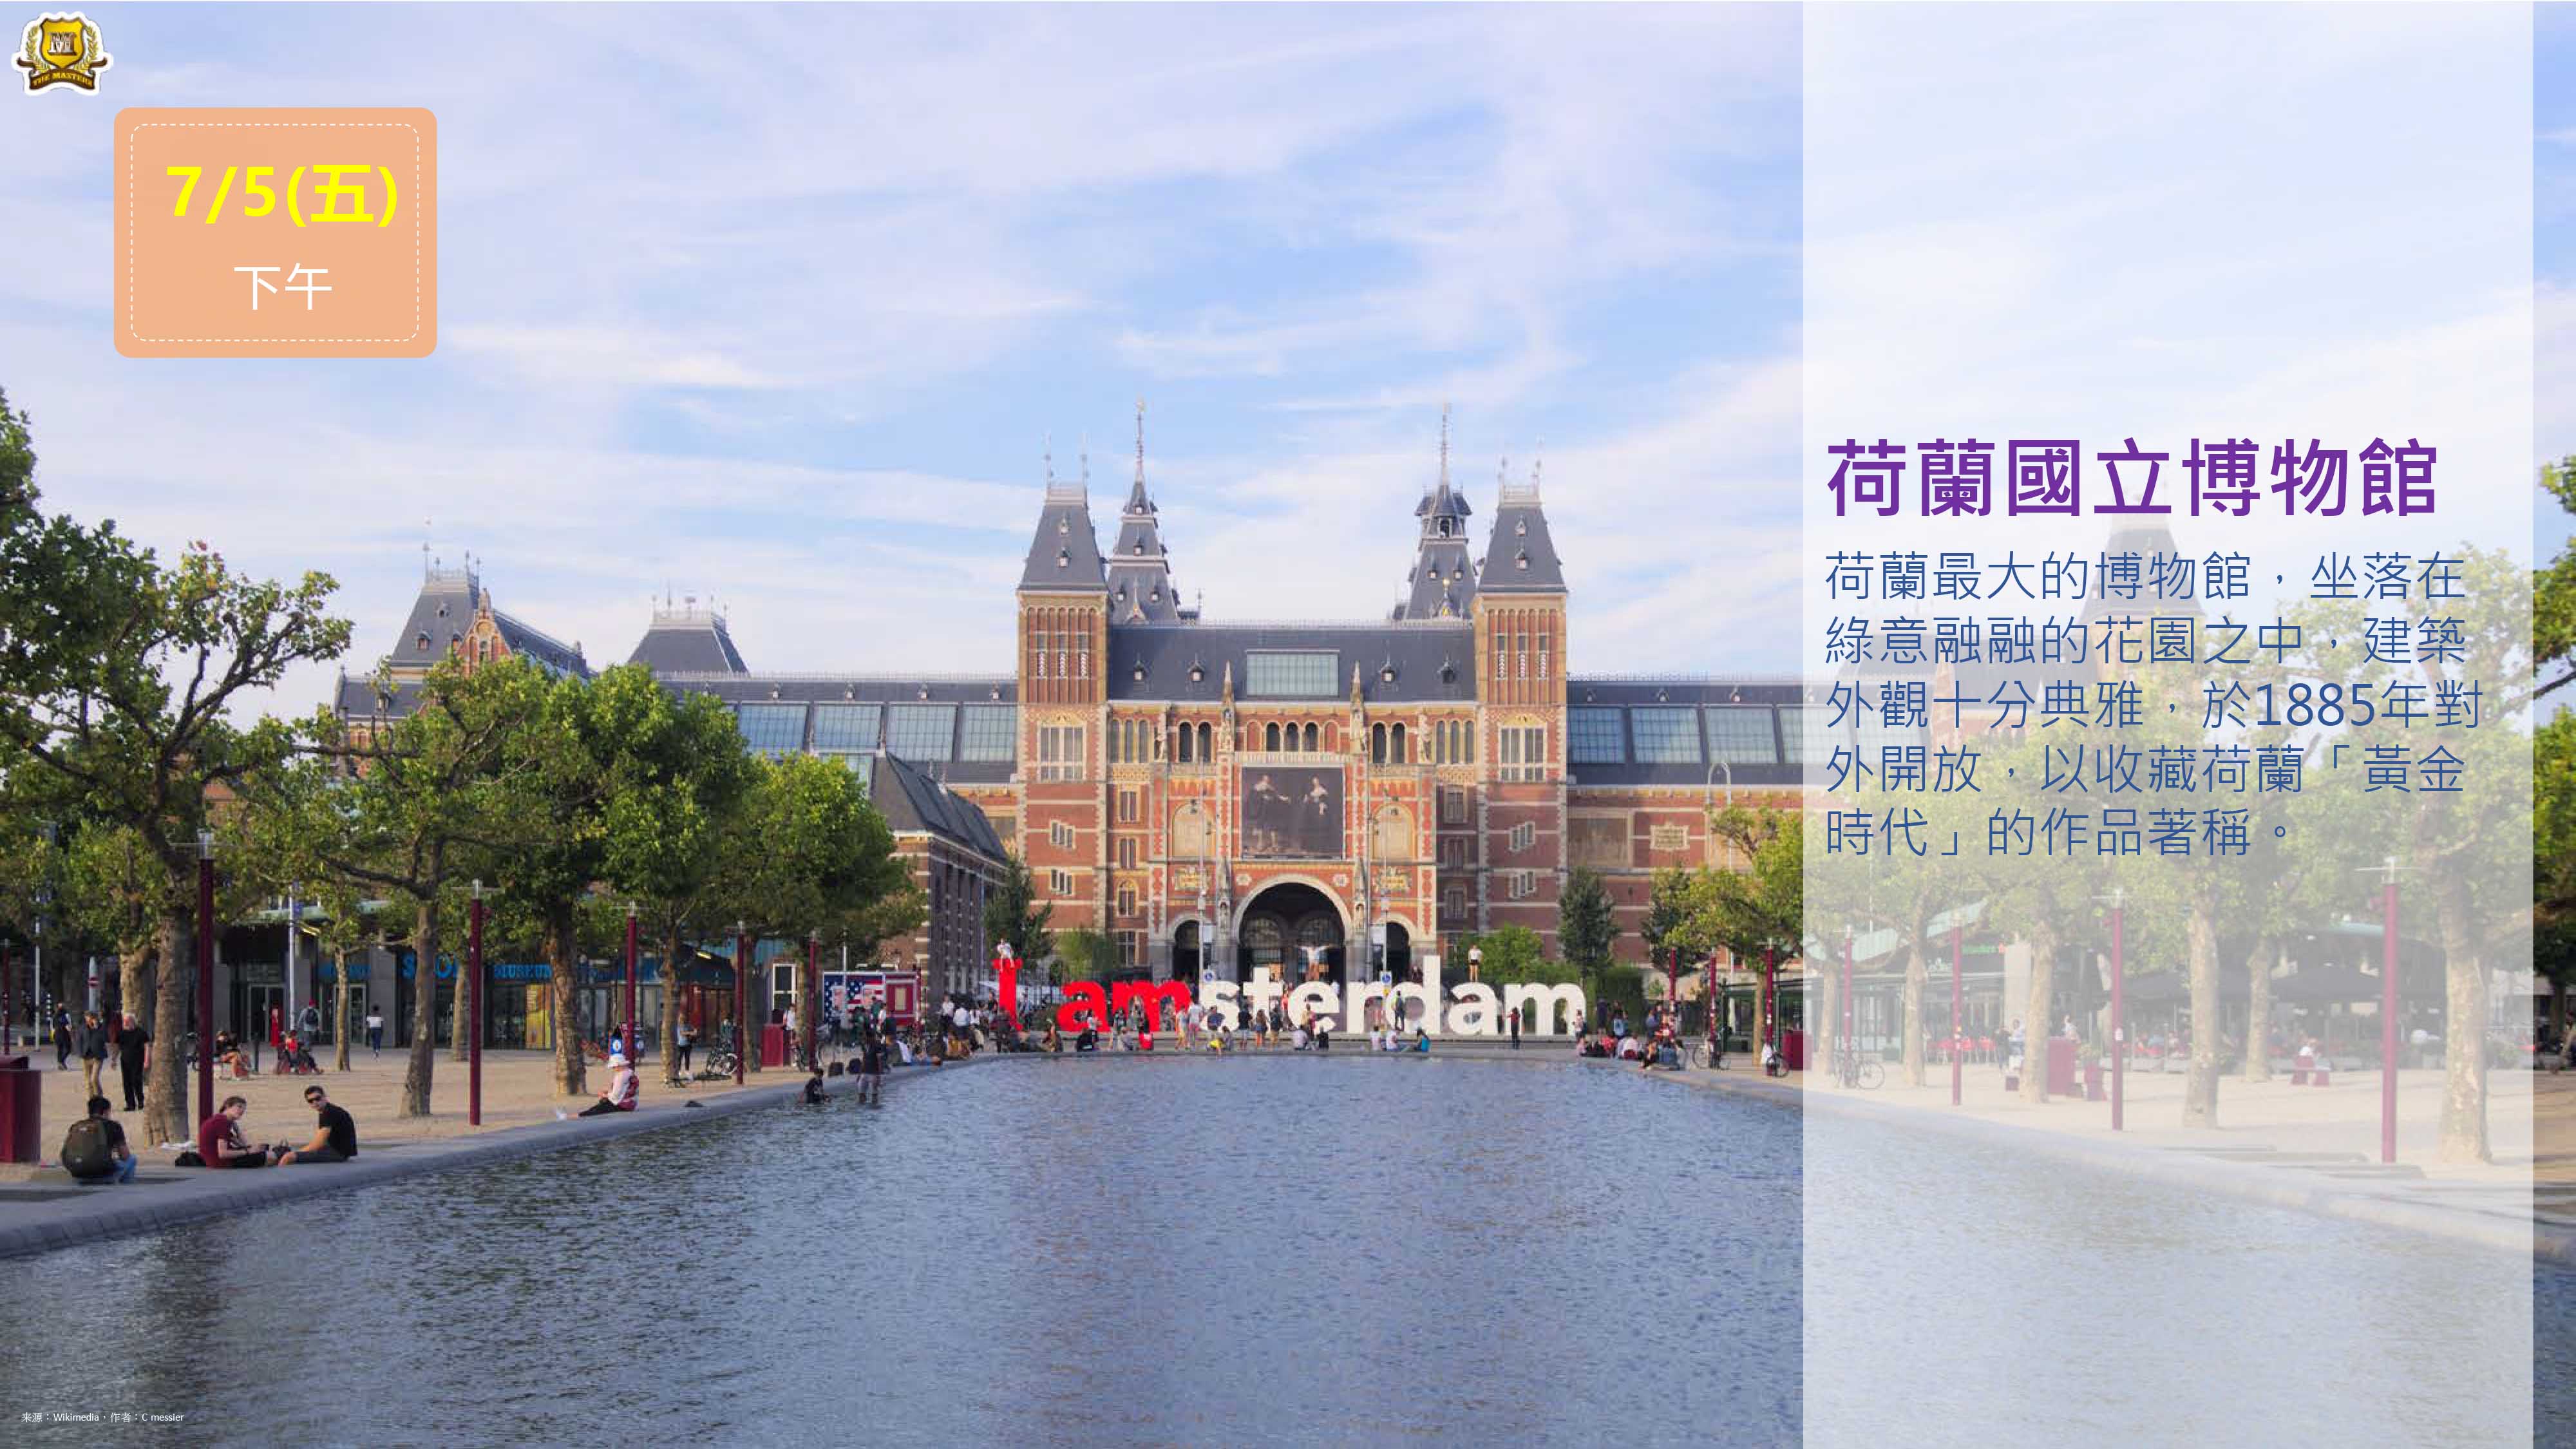 阿姆斯特丹國家博物館 Het Rijksmuseum Amsterdam